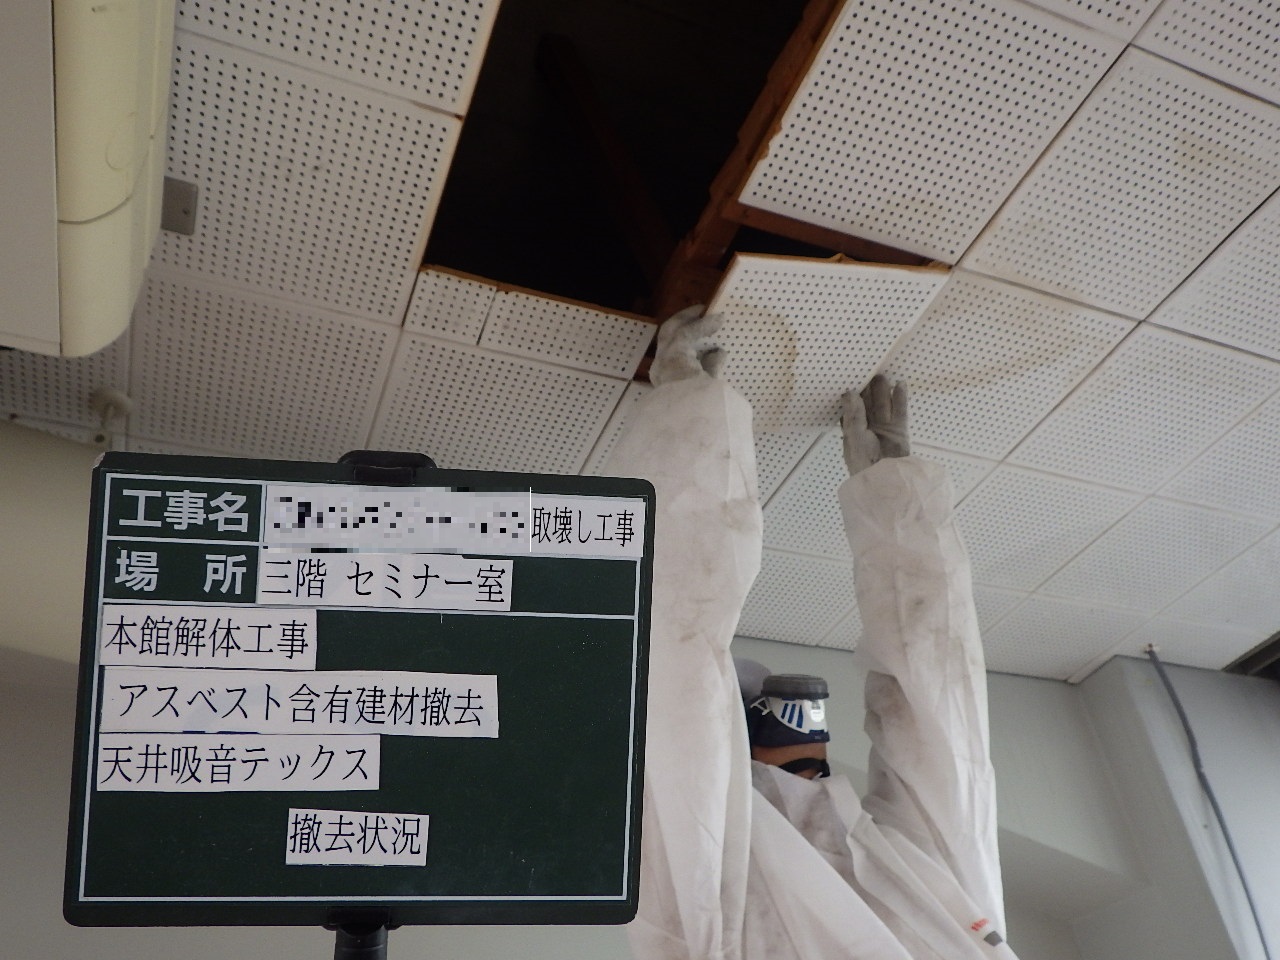 天井吸音板撤去状況(手ばらし)。A県建物取壊し工事